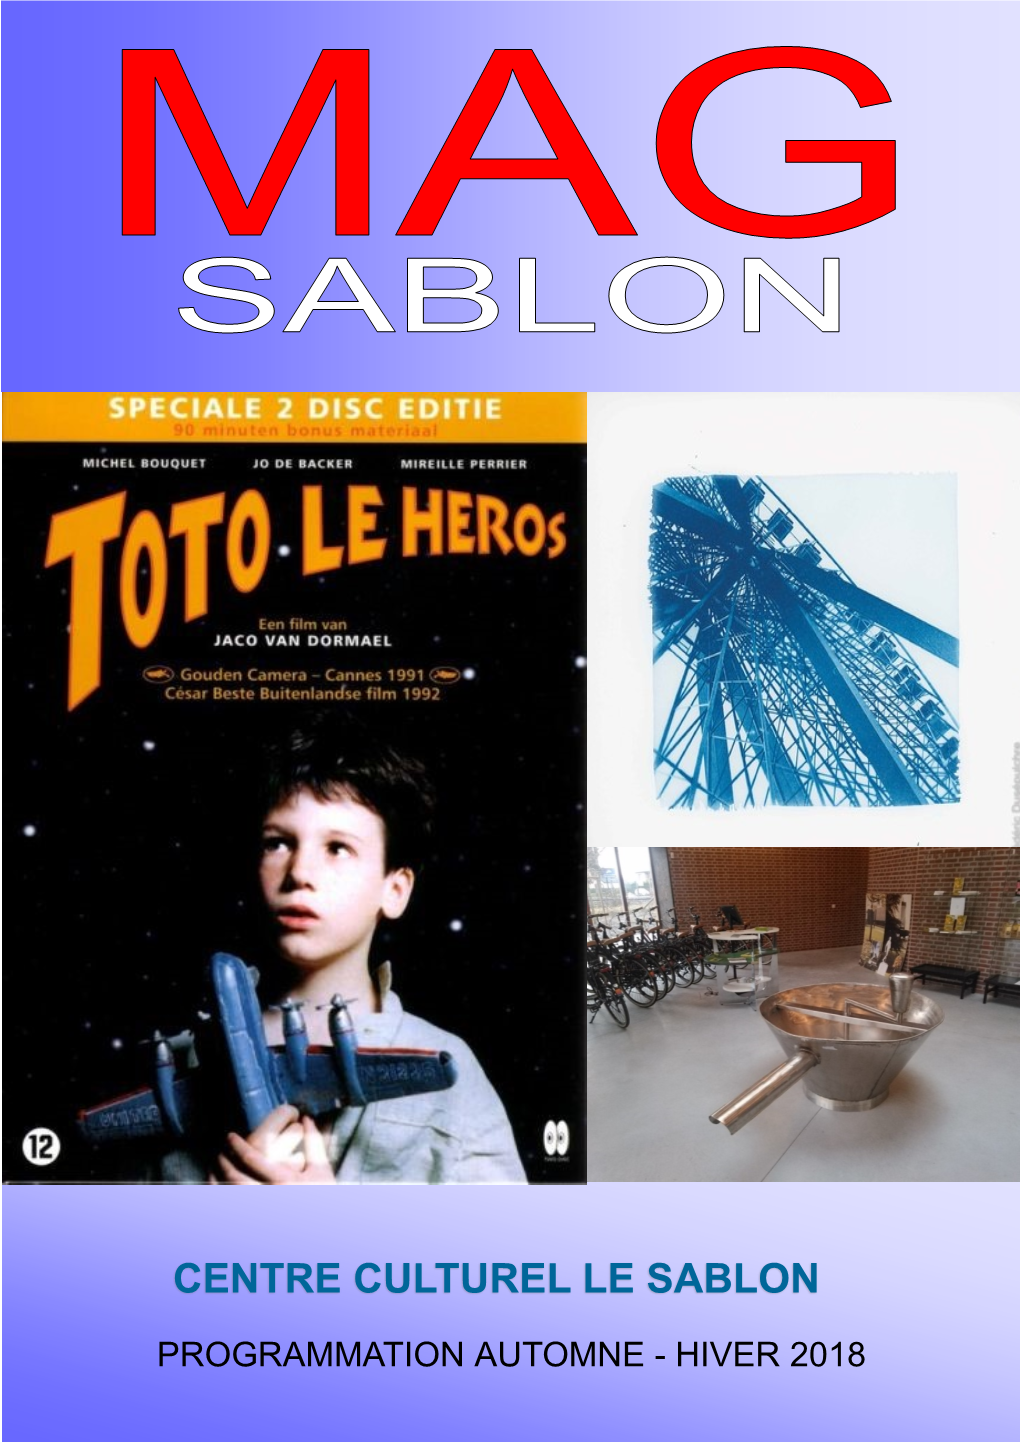 Centre Culturel Le Sablon